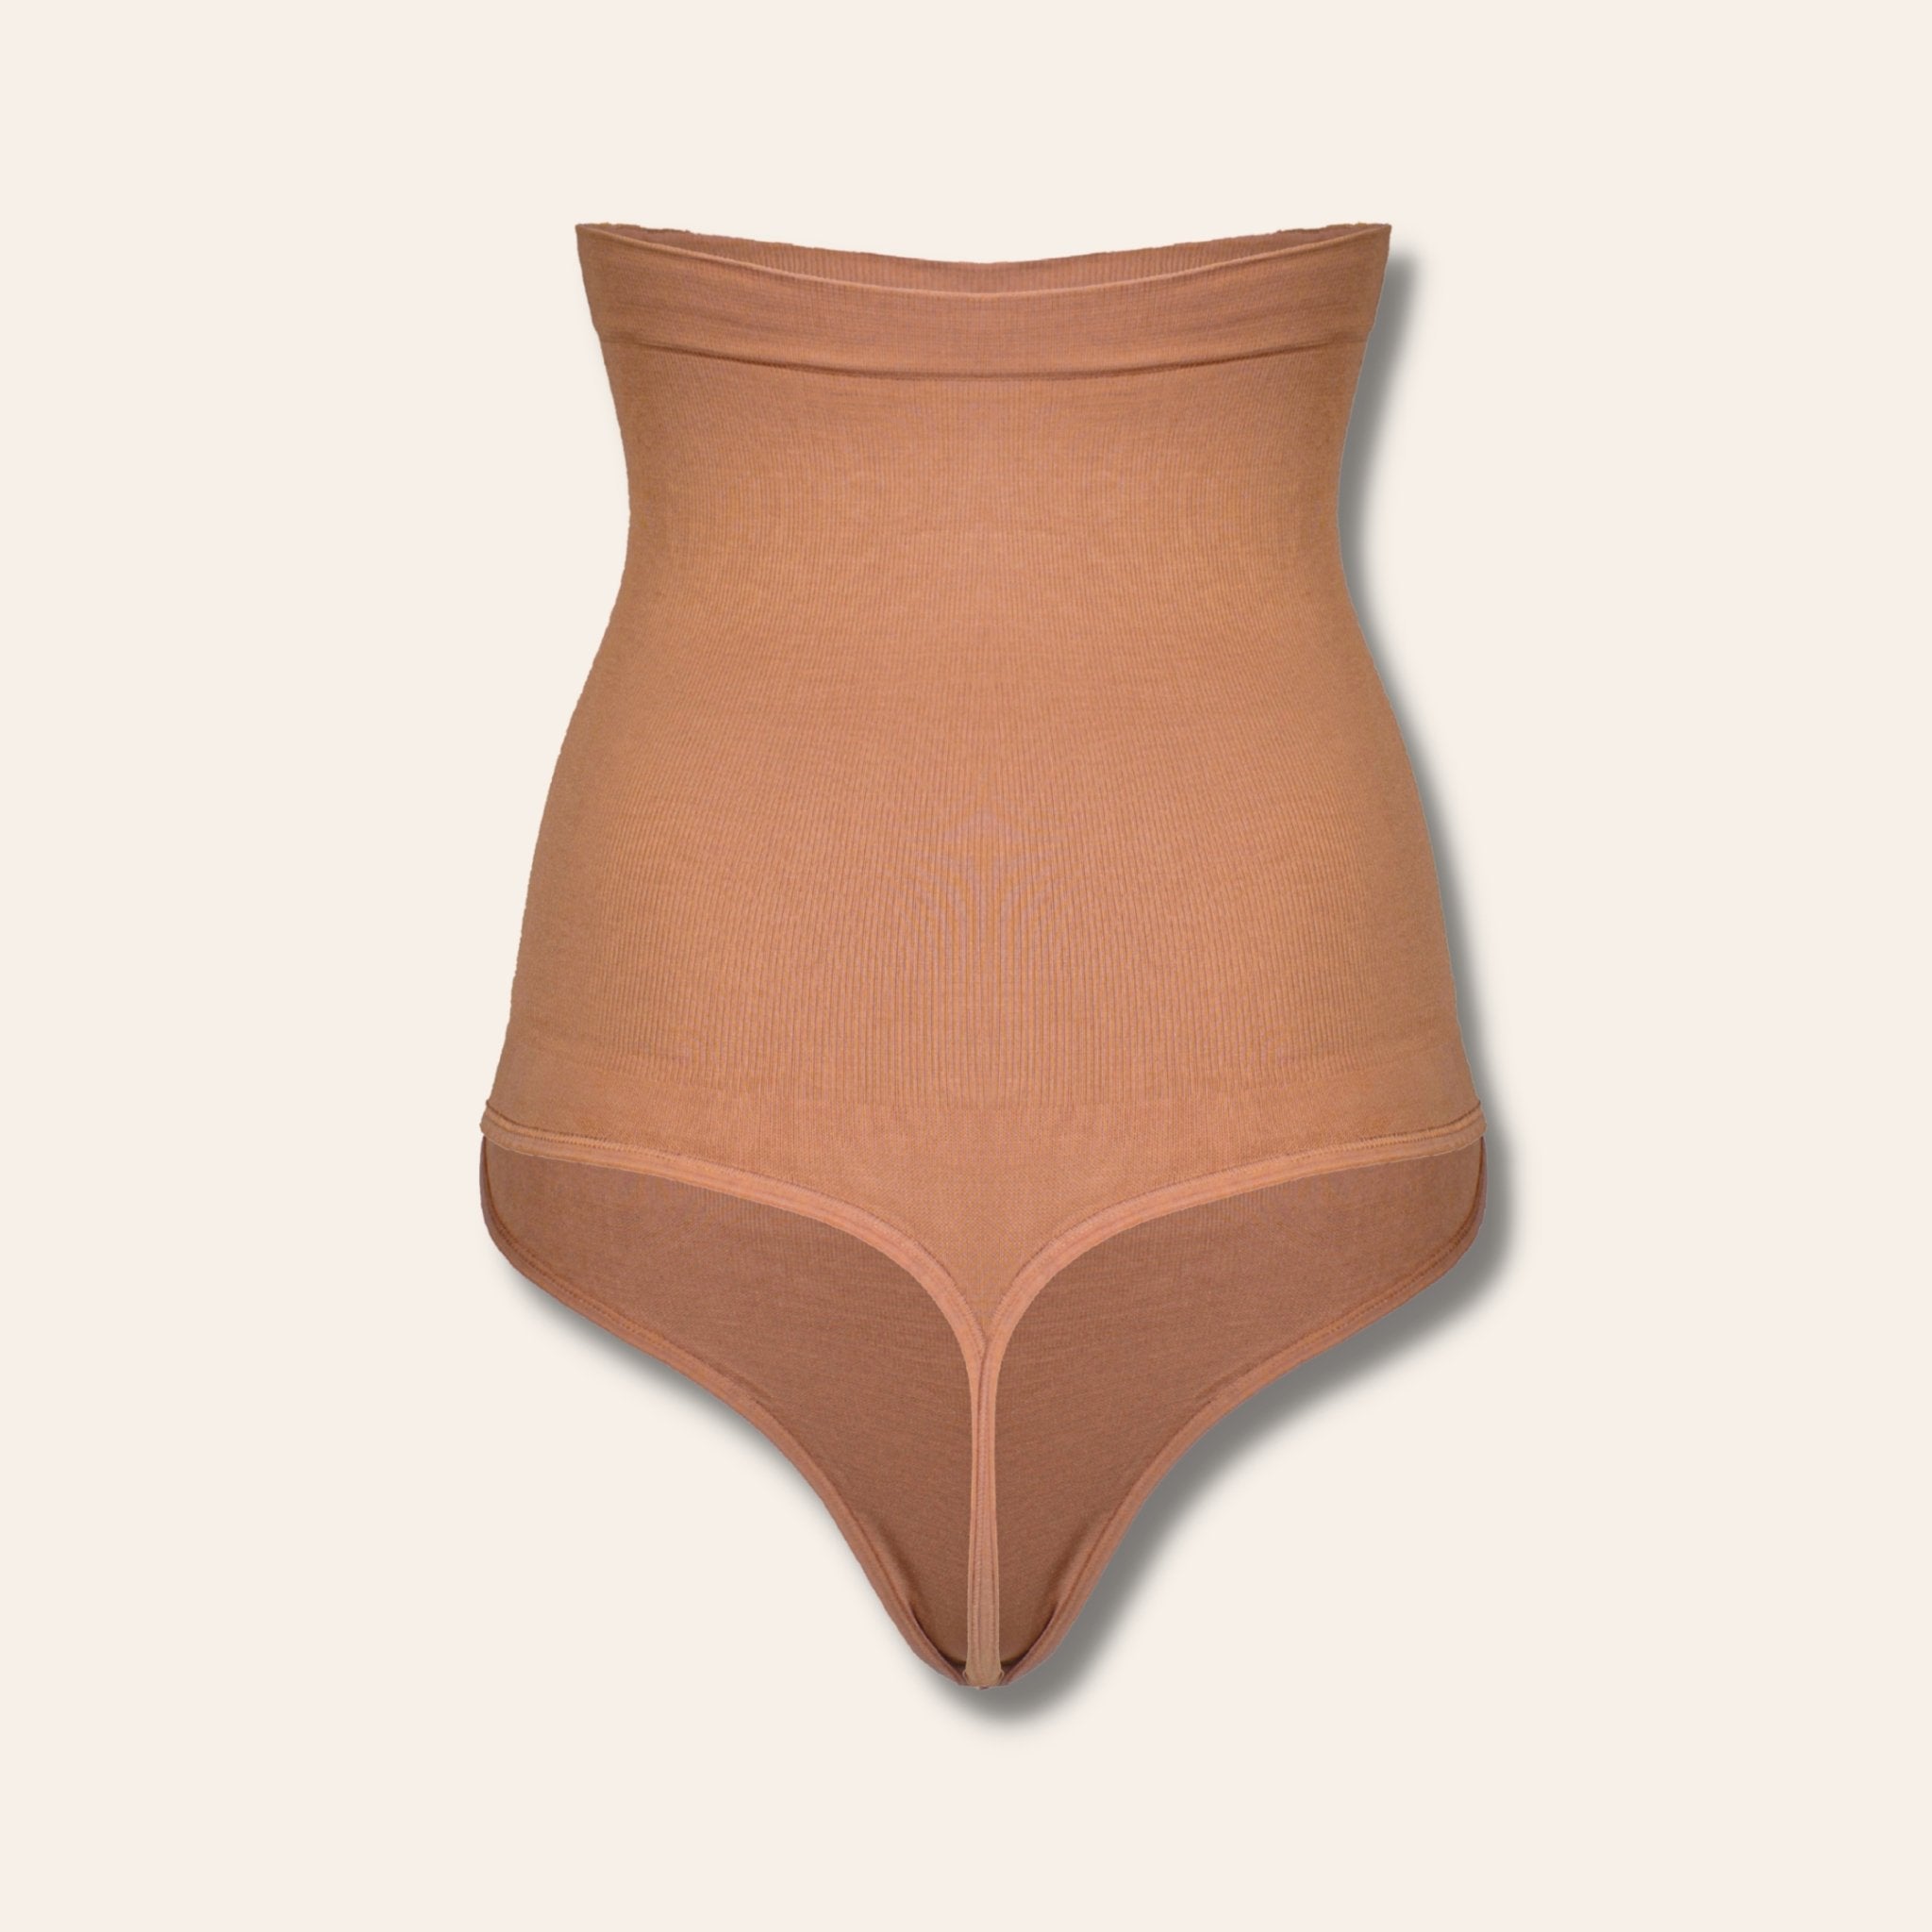 Body Shaper Slimming Underwear - Tan